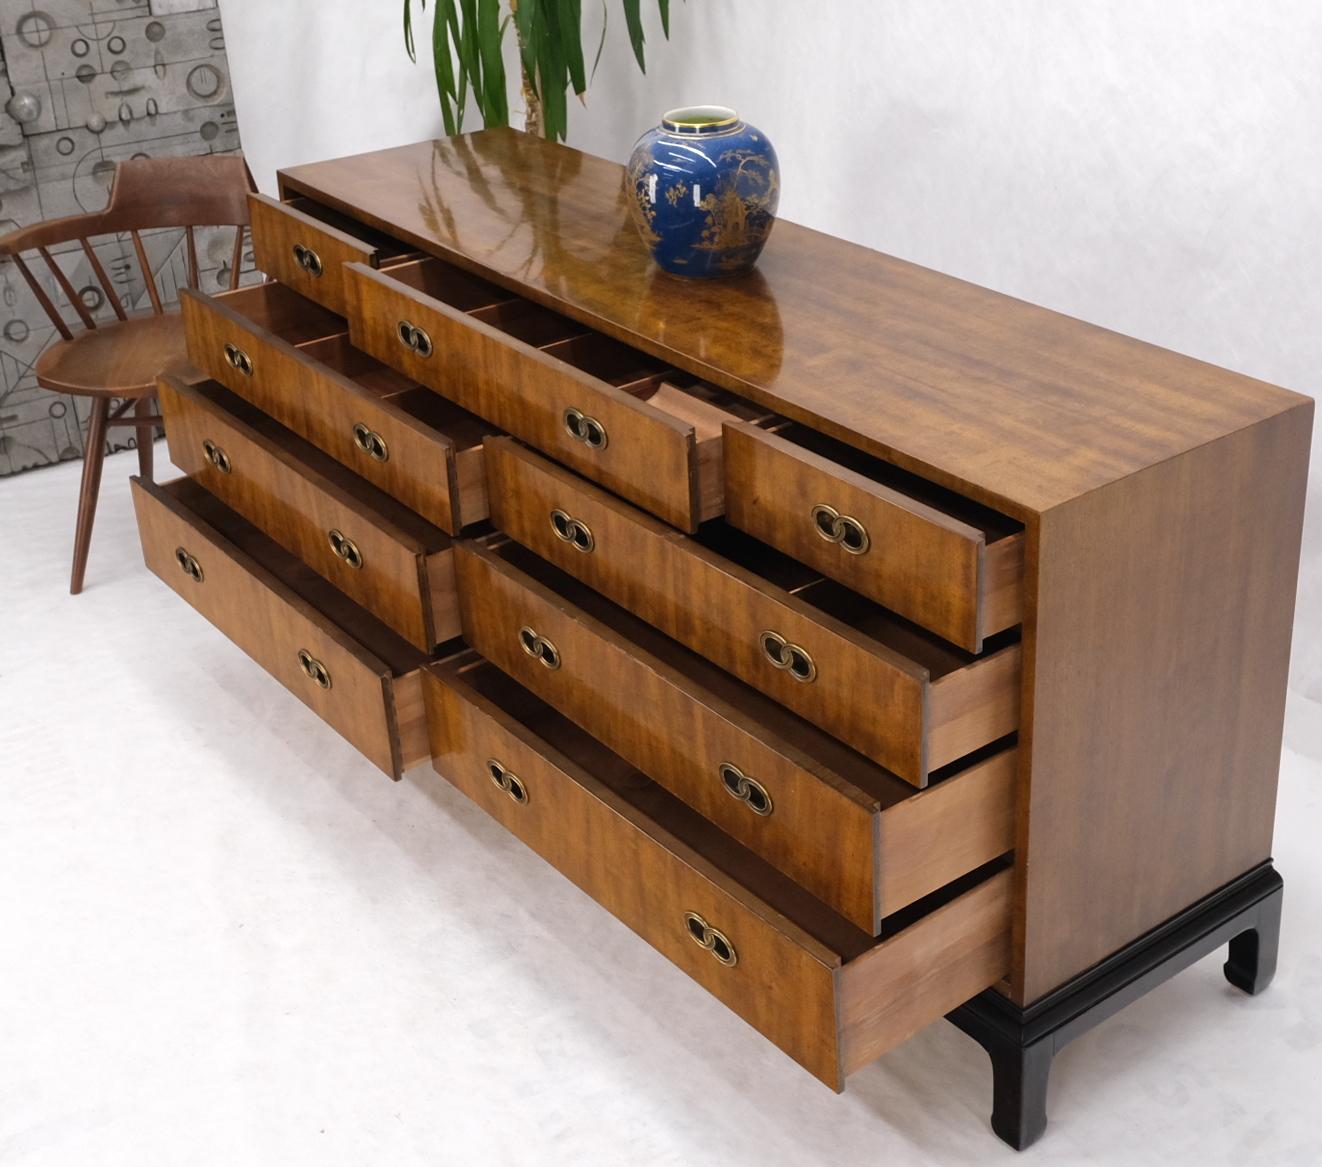 Ebonised bracket style base 9 drawers Mid-Century Modern satinwood long dresser credenza by Henredon.